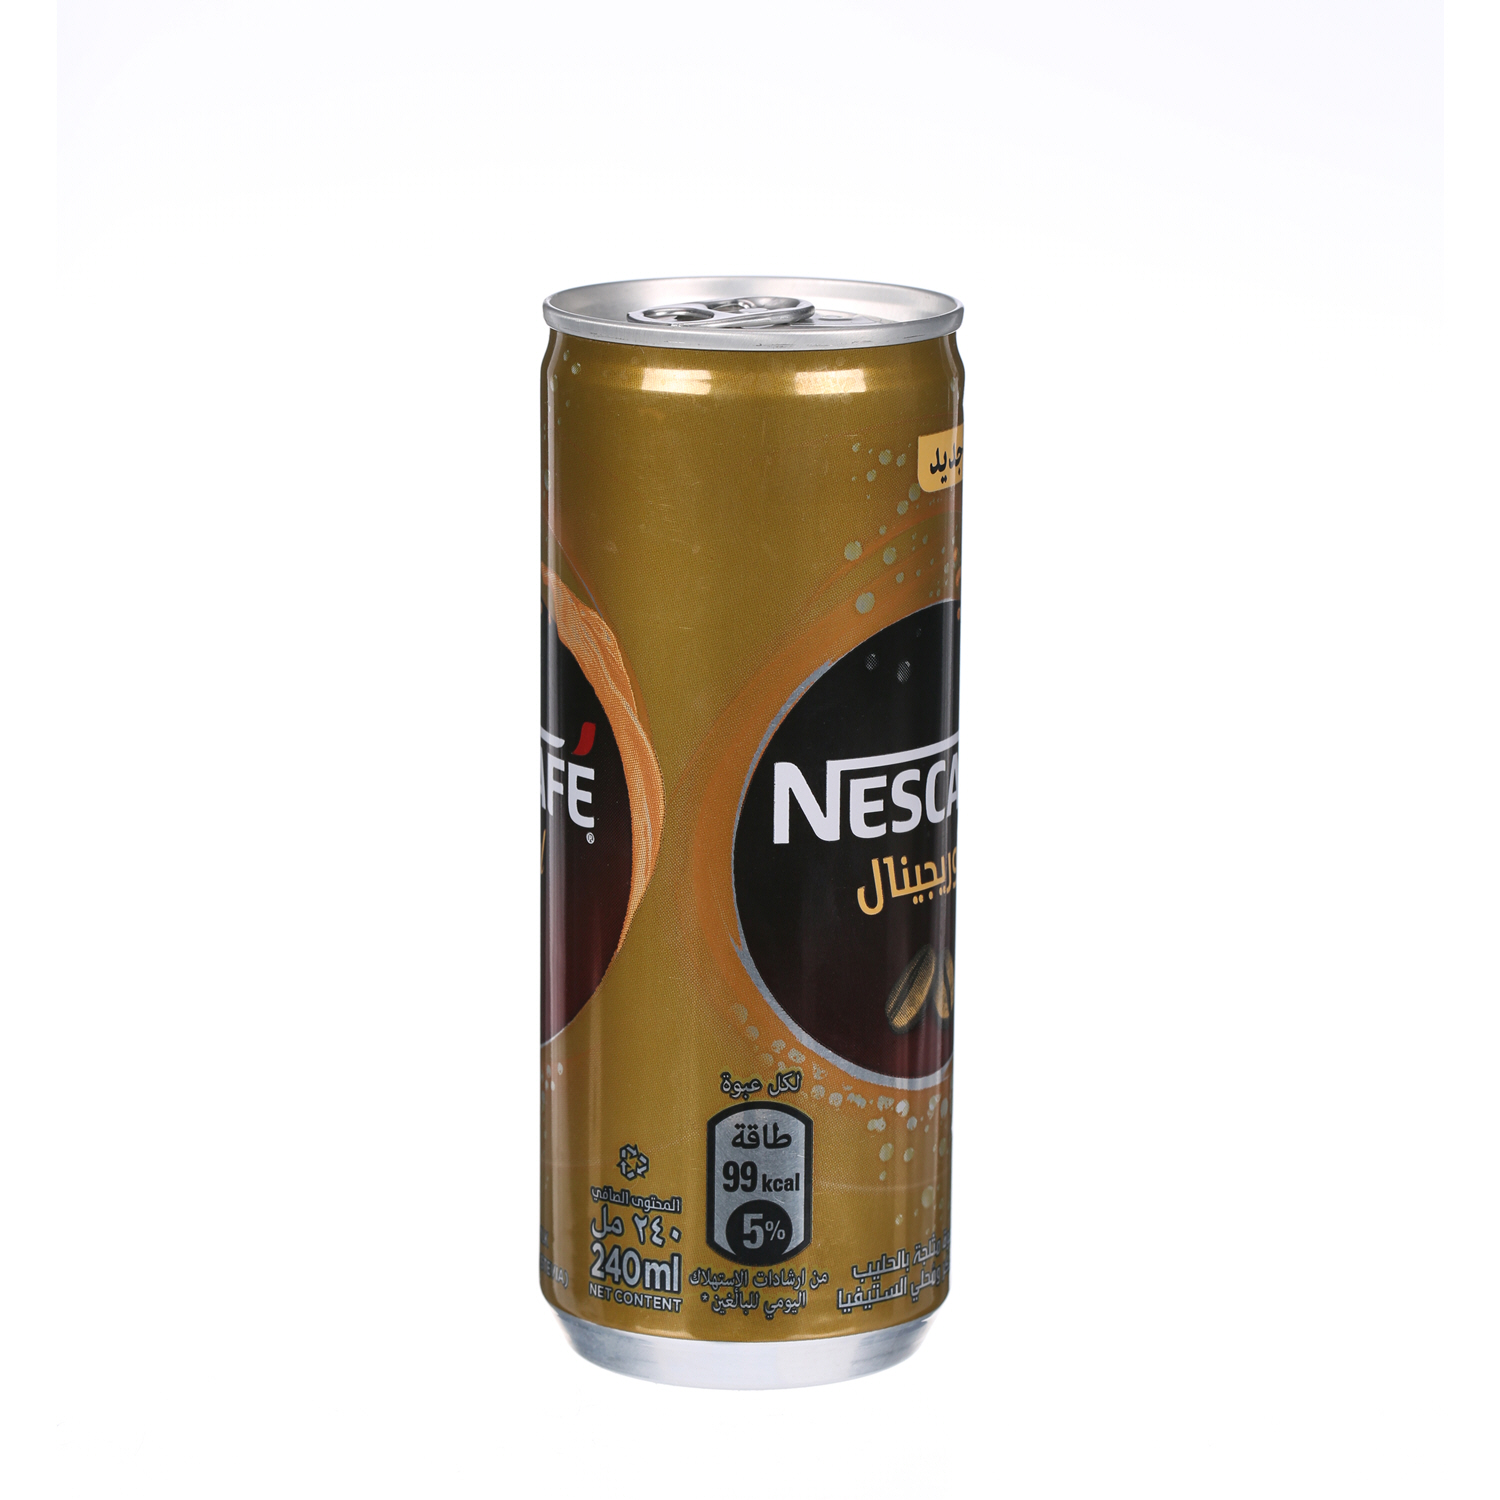 Nescafe Original Coffee 240ml